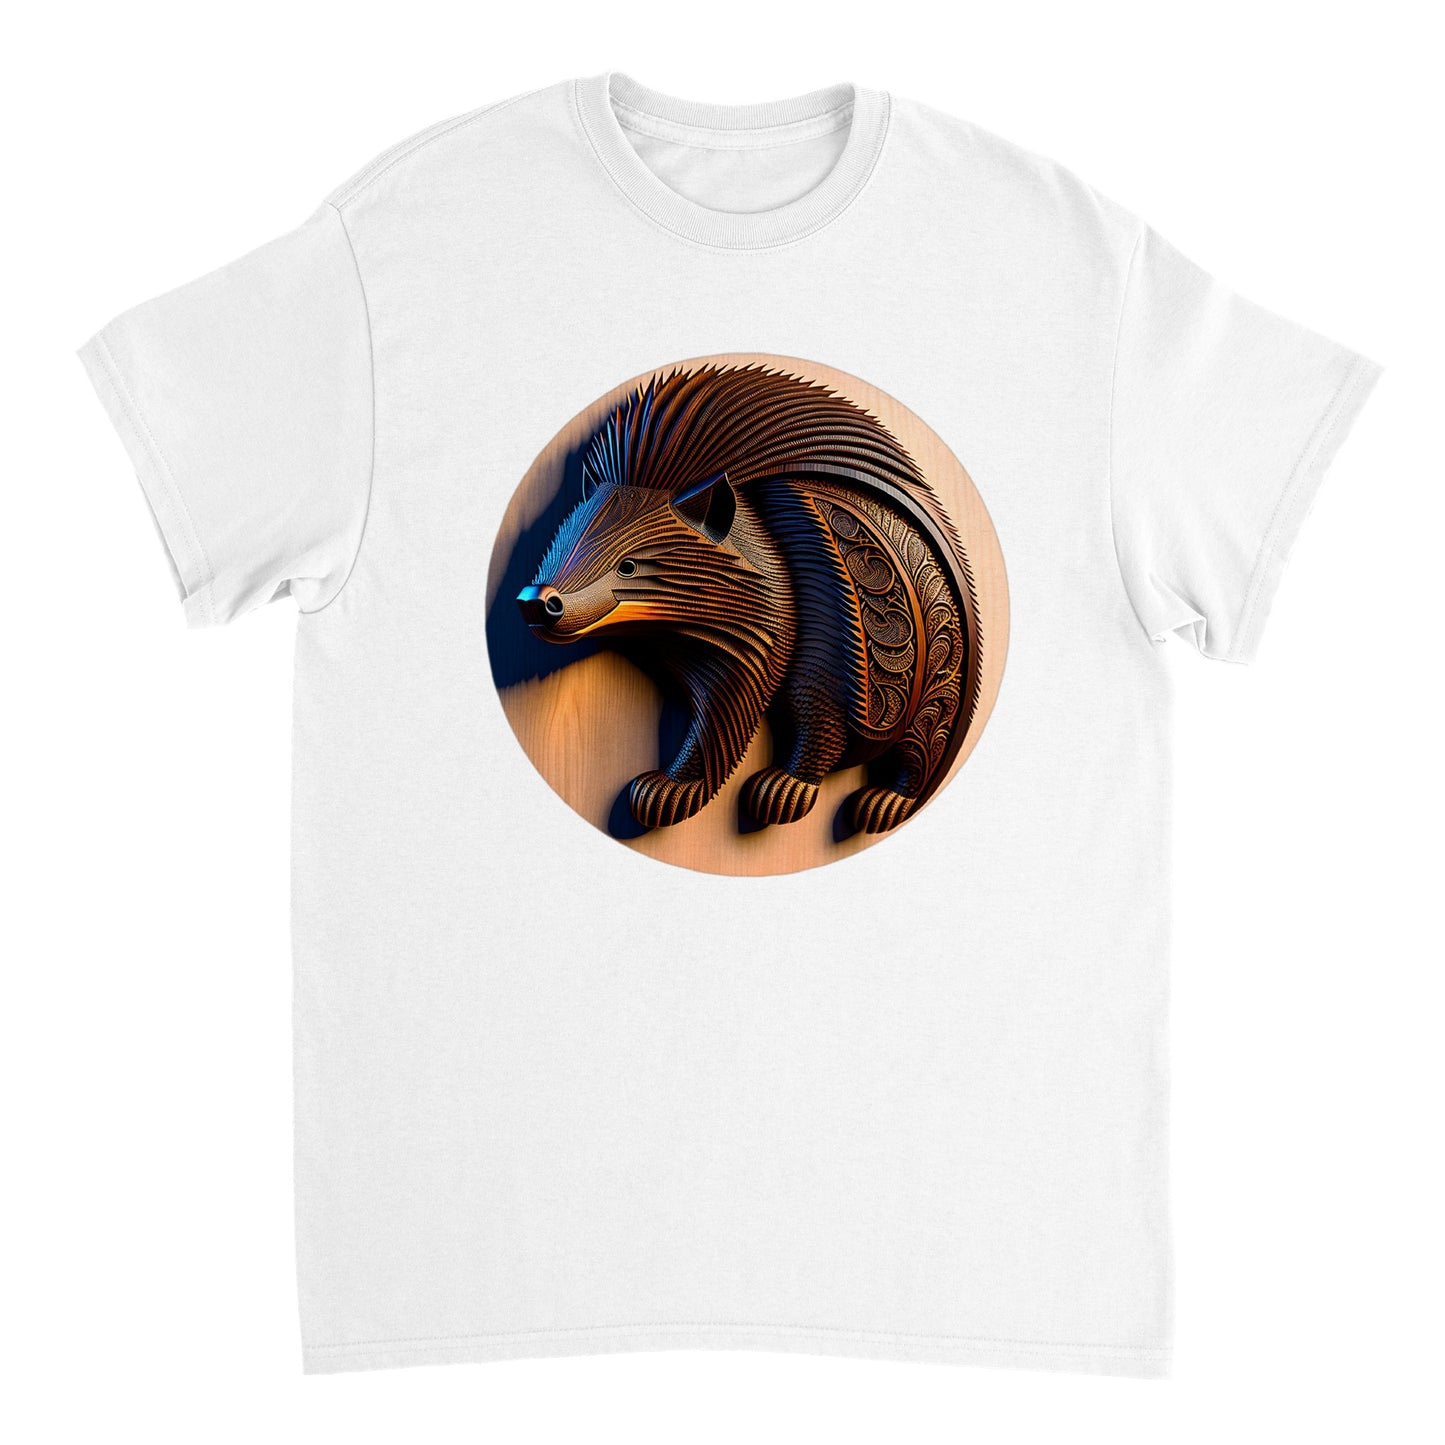 3D Wooden Animal Art - Heavyweight Unisex Crewneck T-shirt 3